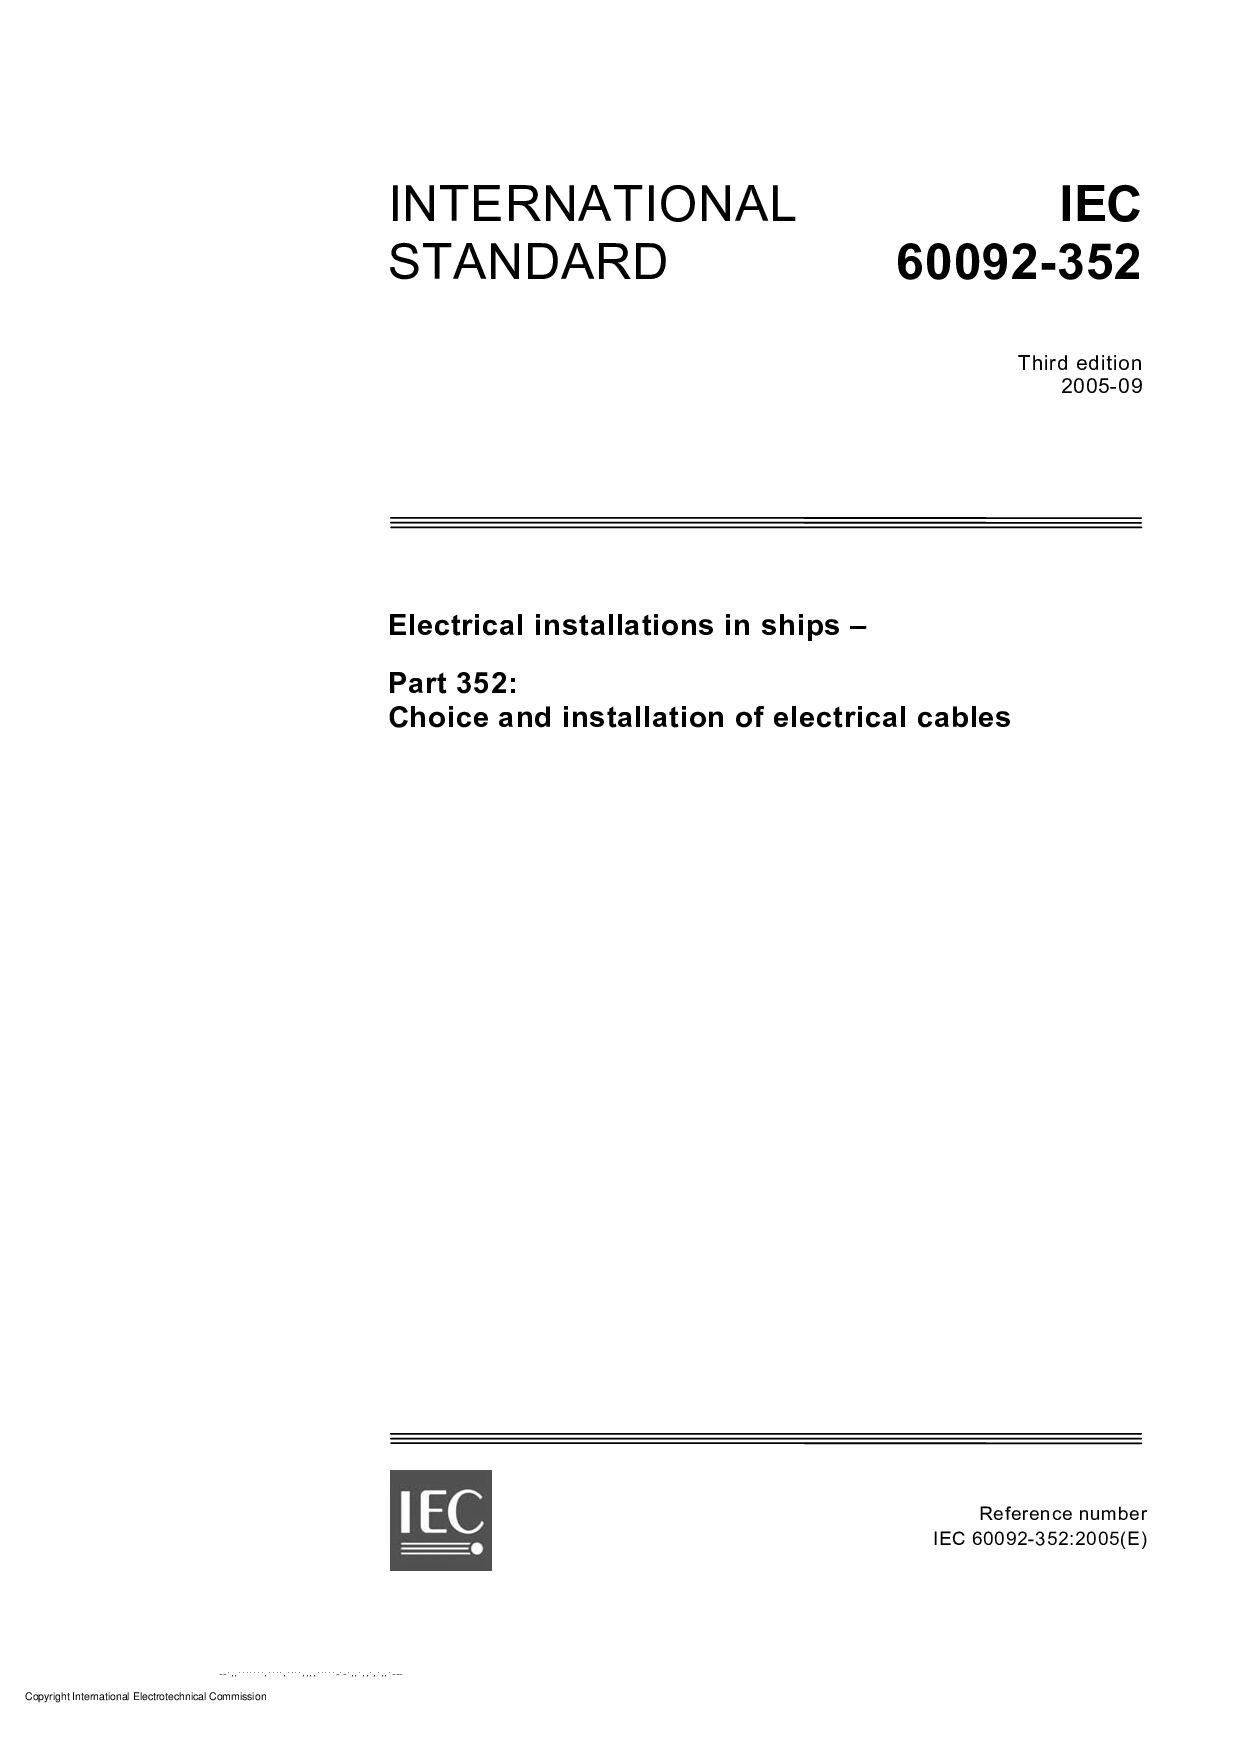 IEC 60092-352:2005